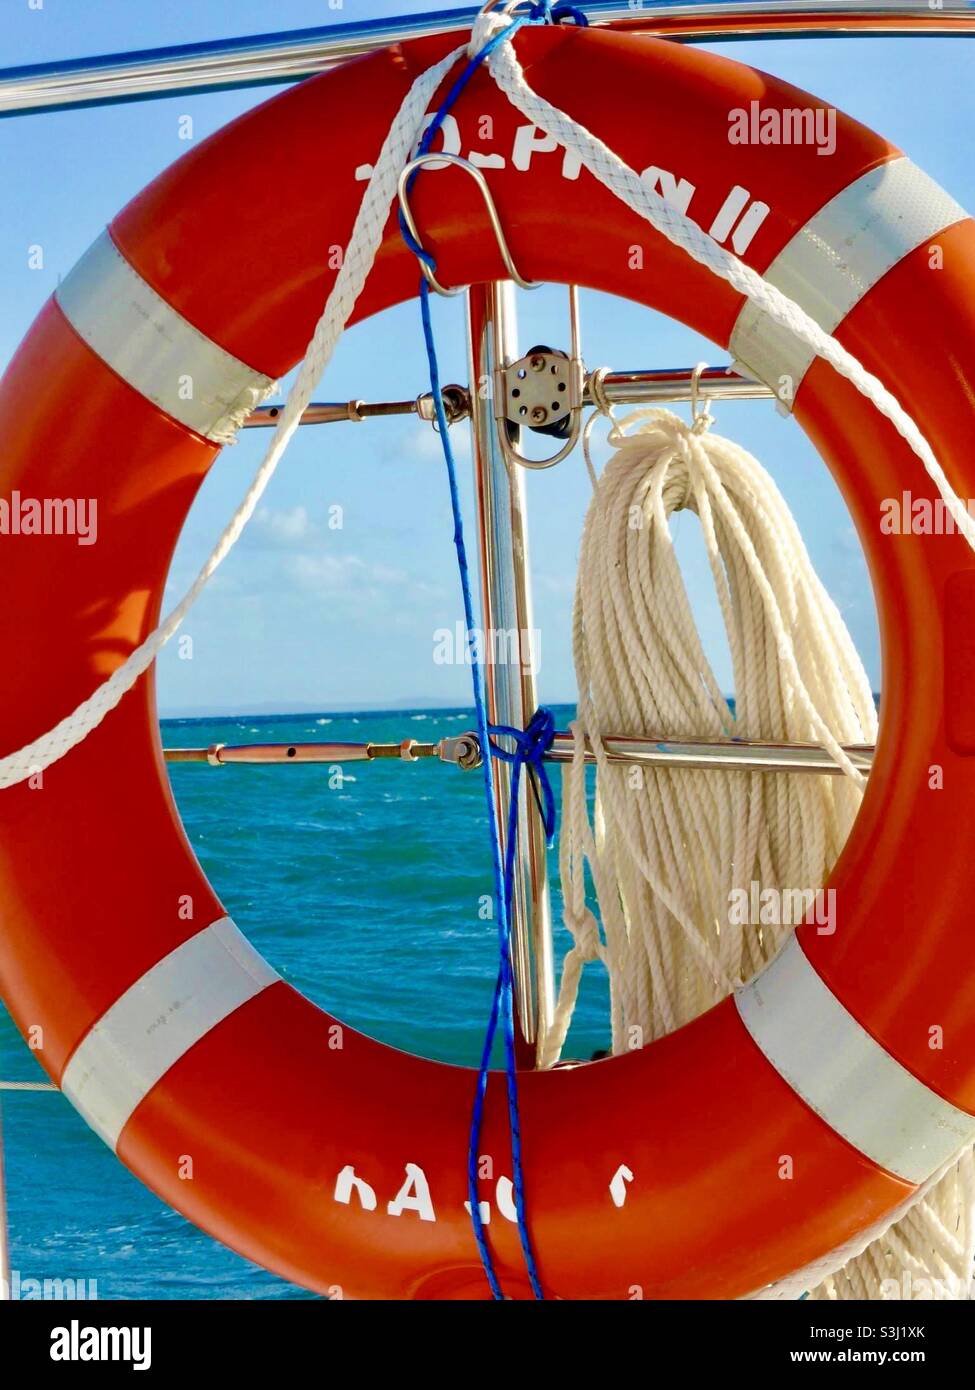 Salvador de vida rojo en barco con vistas al océano Foto de stock